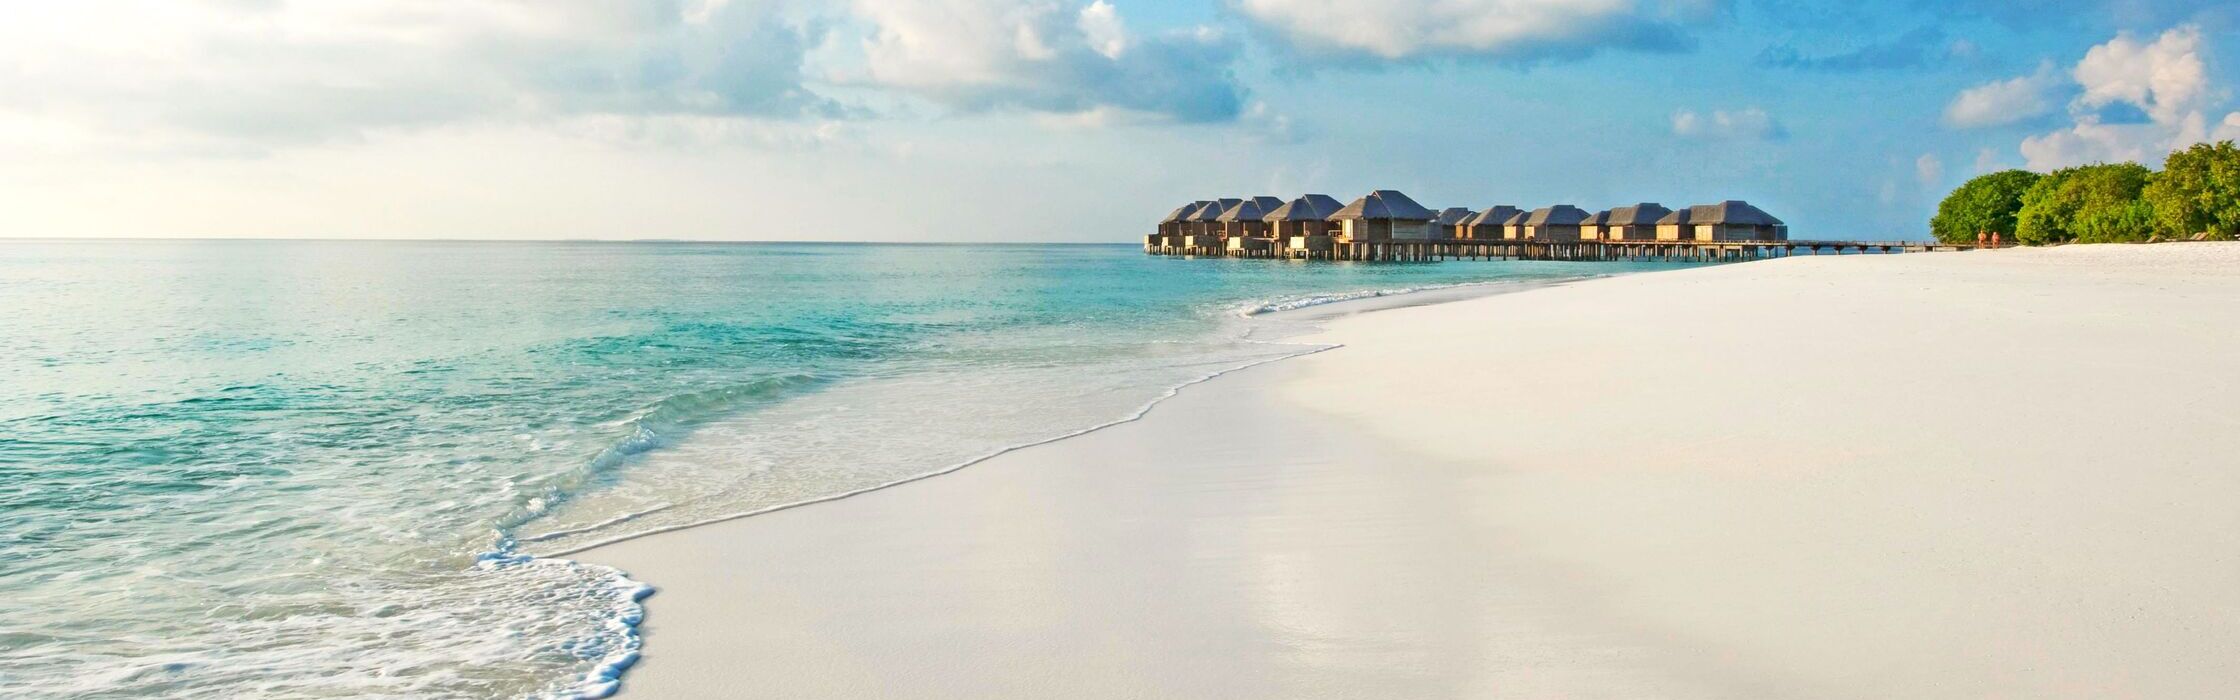 Мальдивы - ваше идеальное путешествие 